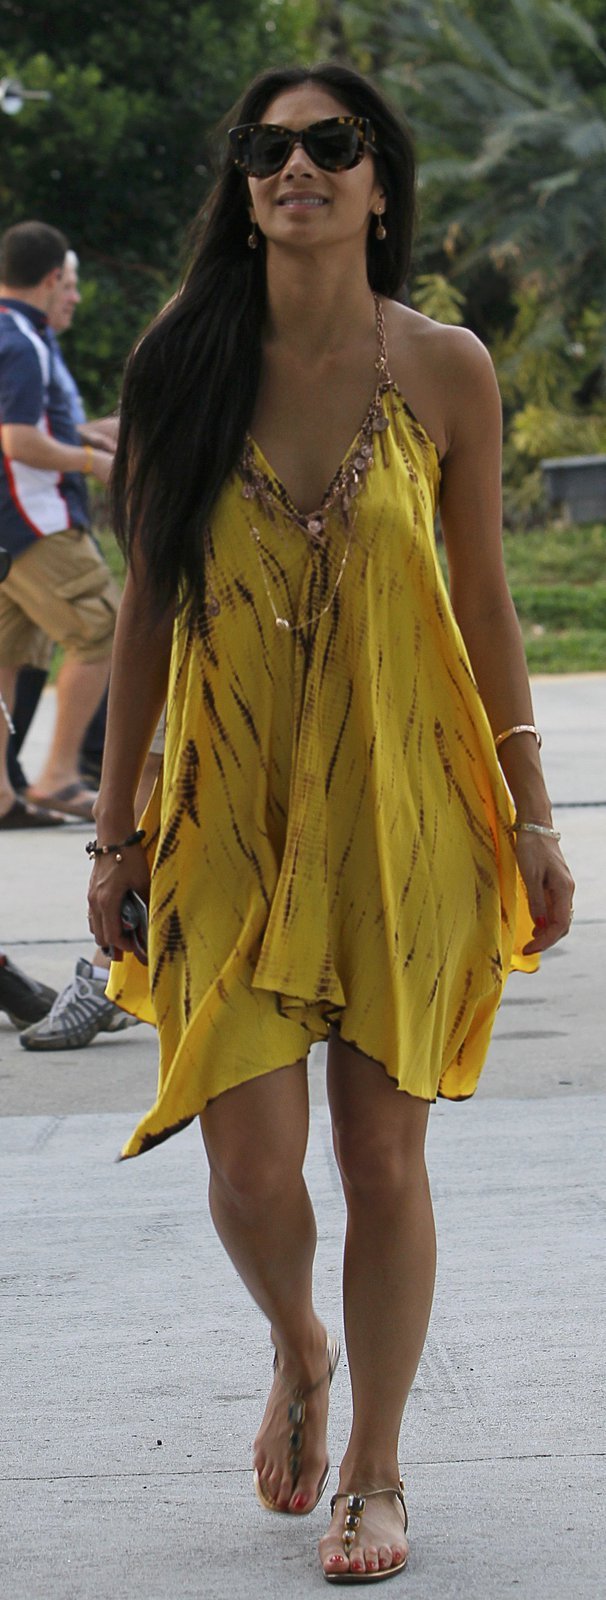 Přítelkyně Lewise Hamiltona, zpěvačka Nicole Scherzinger na okruhu v Sepangu